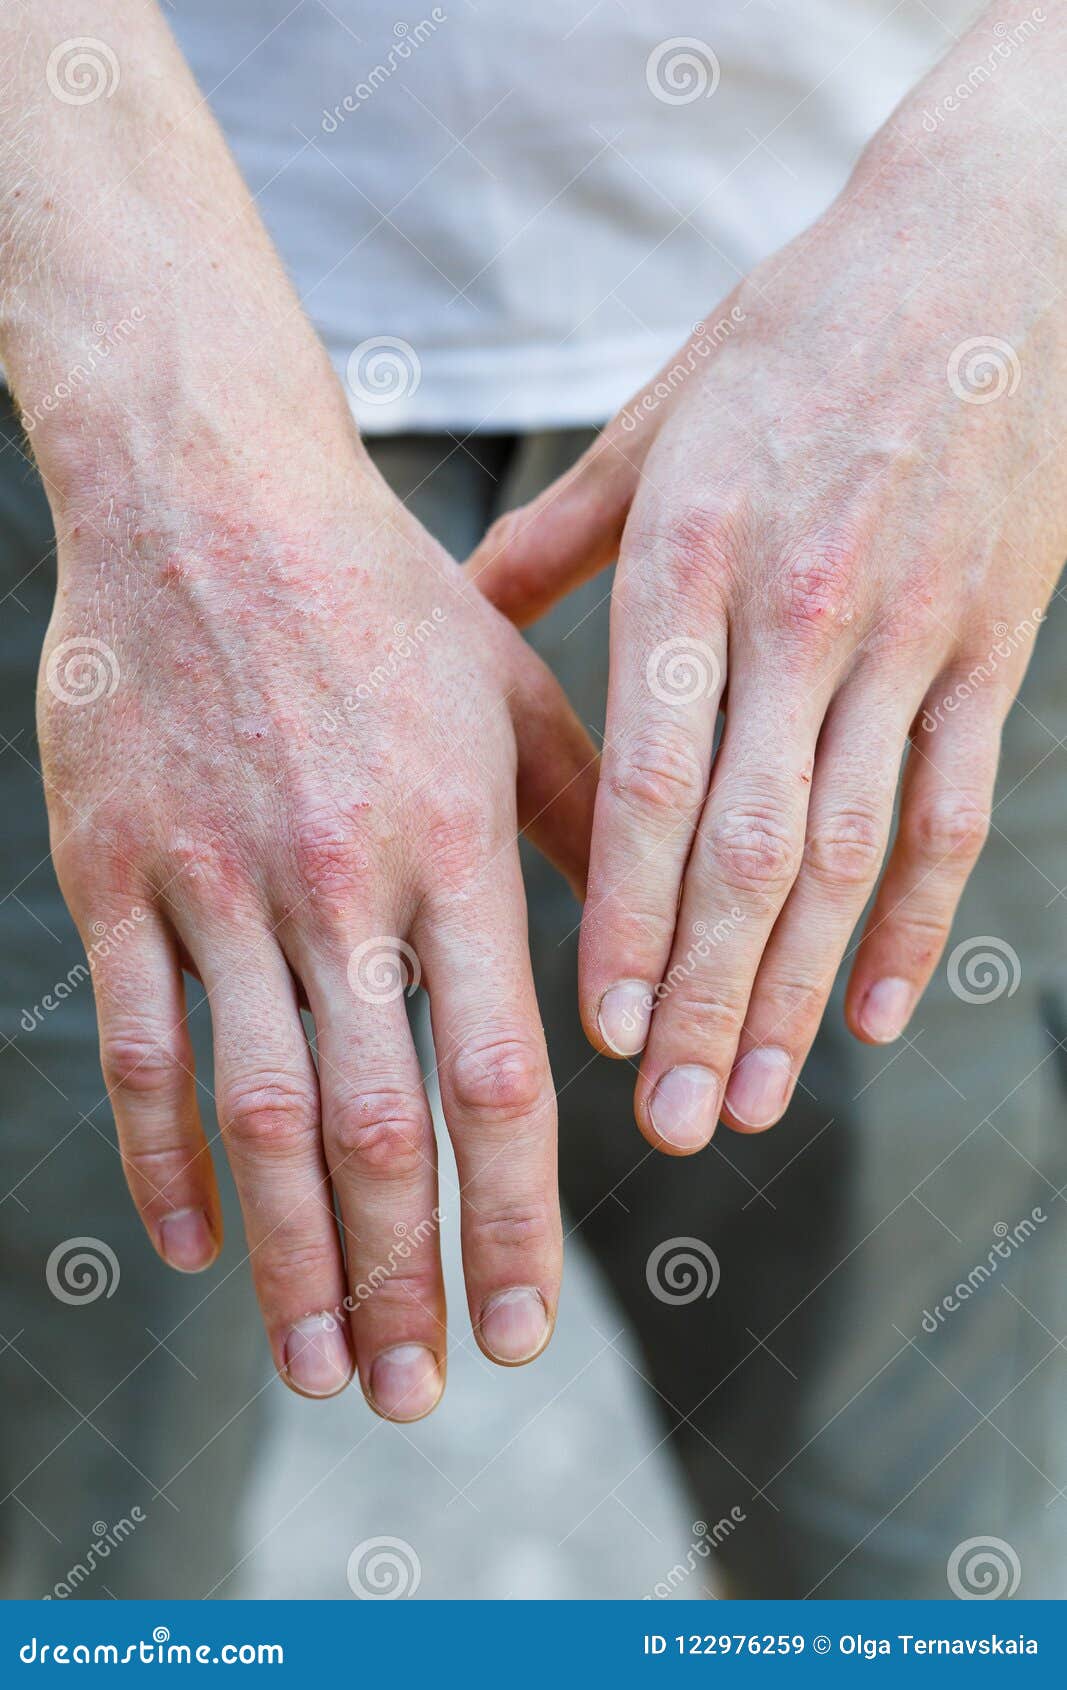 plaque psoriasis hands pictures)